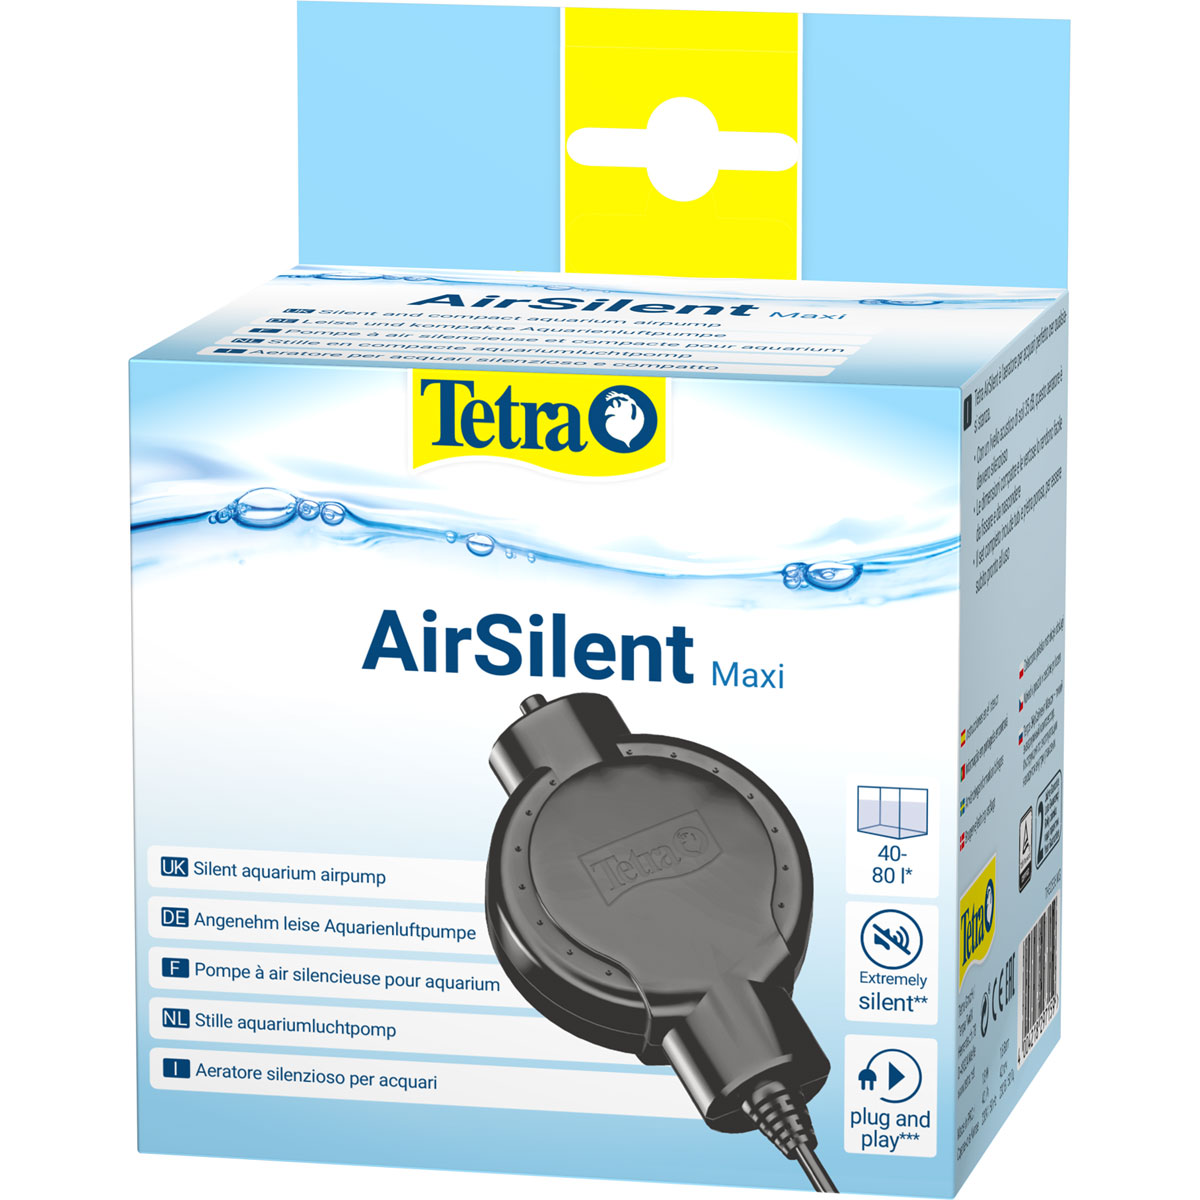 Tetra Aqurarien-Pumpe AirSilent Maxi